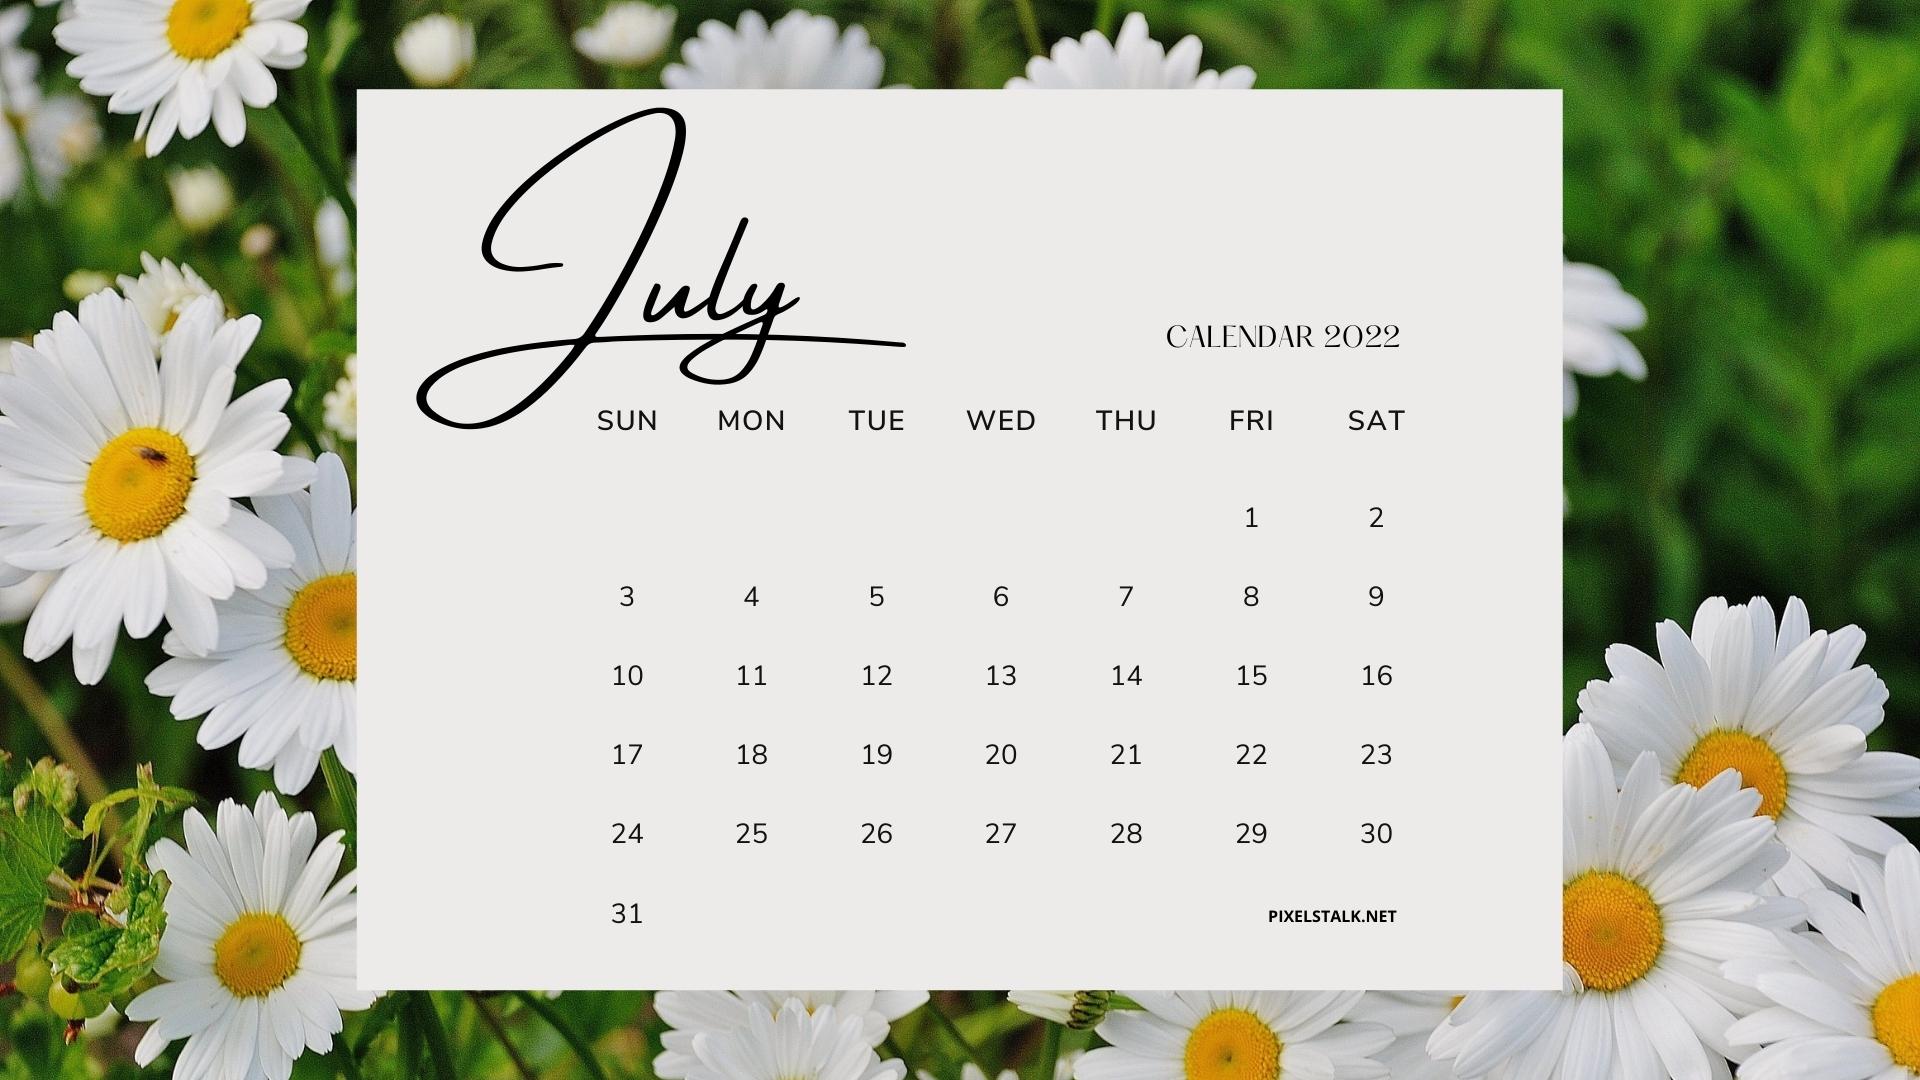 Lịch tháng 7 năm 2022 sẽ đến với các phông nền chất lượng cao miễn phí, giúp cho không gian làm việc của bạn trở nên thêm sinh động và đầy màu sắc. Các hình ảnh đẹp mắt và thông tin dễ dàng để nhớ sẽ giúp cho bạn luôn theo dõi được tình hình lịch làm việc và các sự kiện quan trọng trong tháng này.